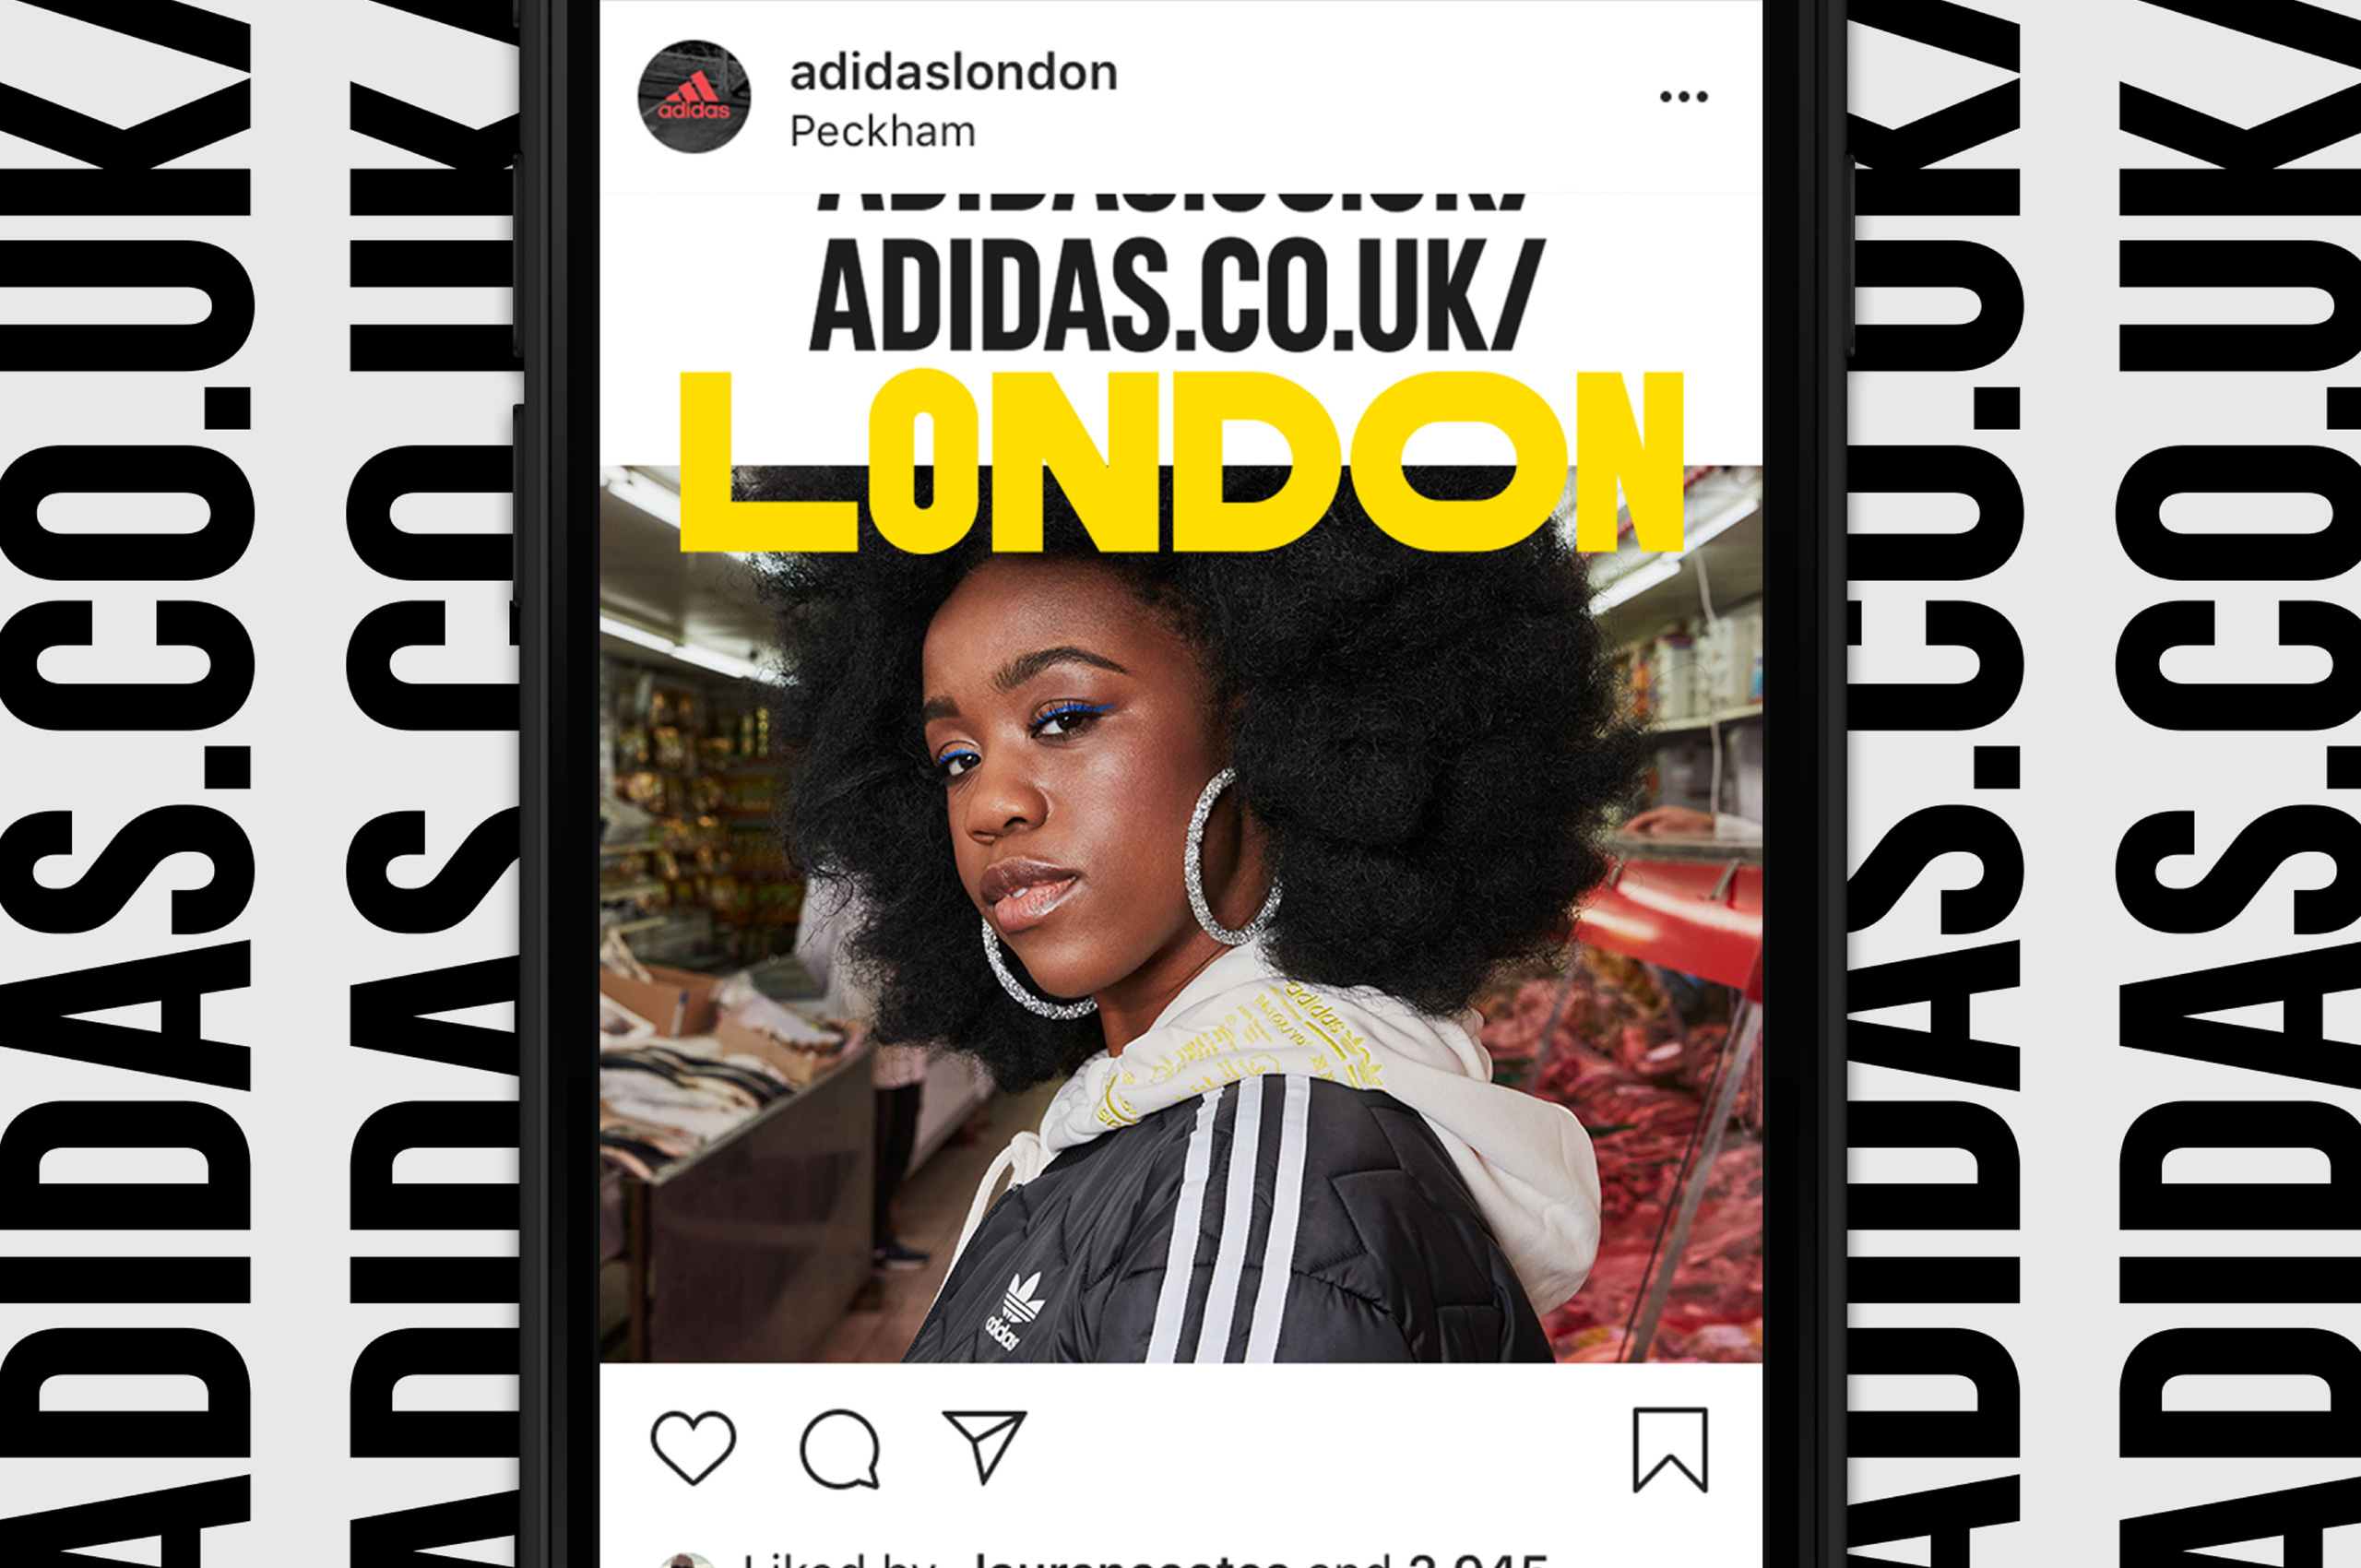 Adidas-website-image-01